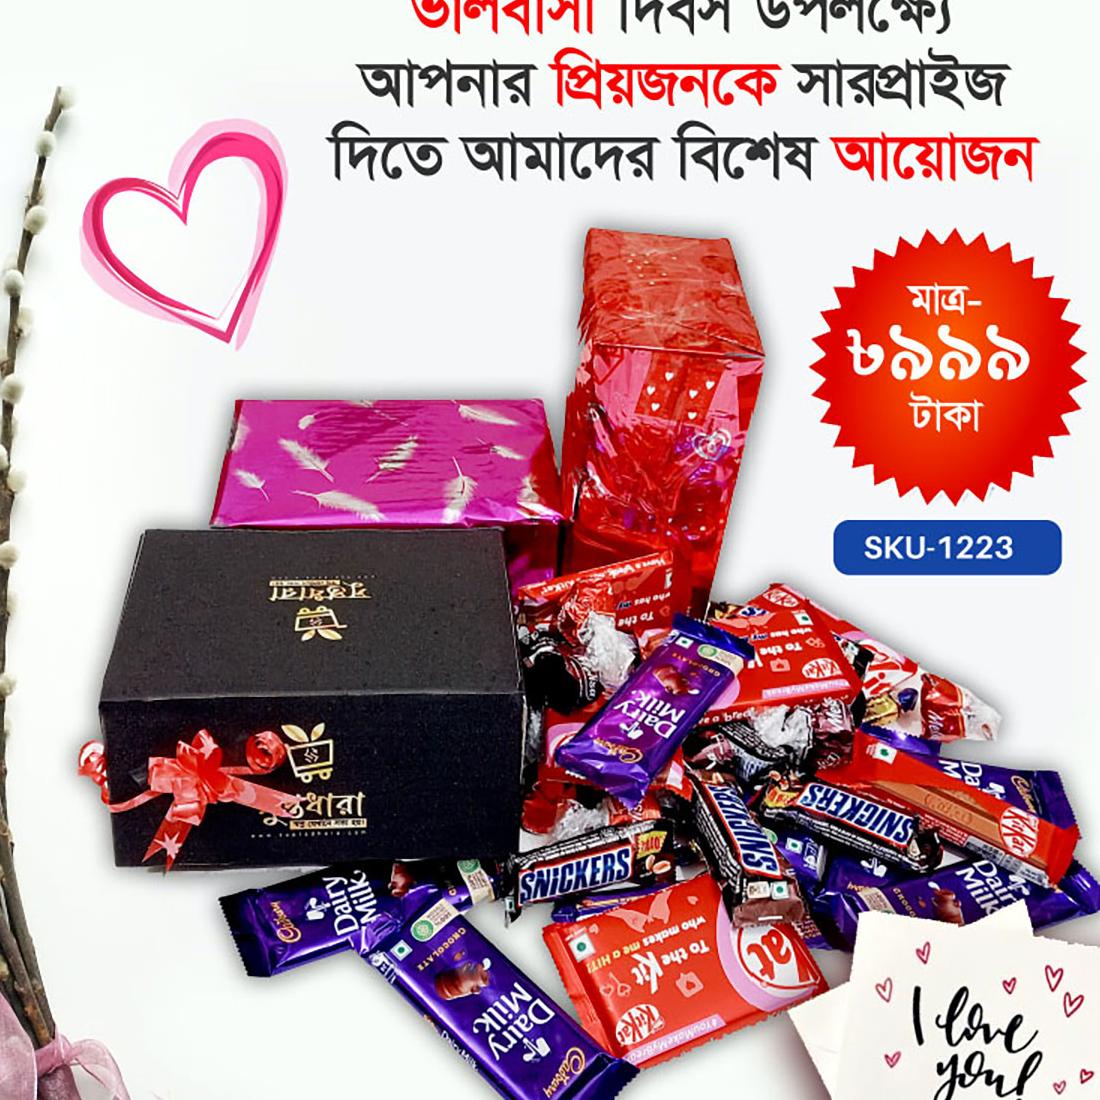 Premium-Chocolate-Special-Package-1223-2-jpg-suptadhara-product-1711741559.jpg